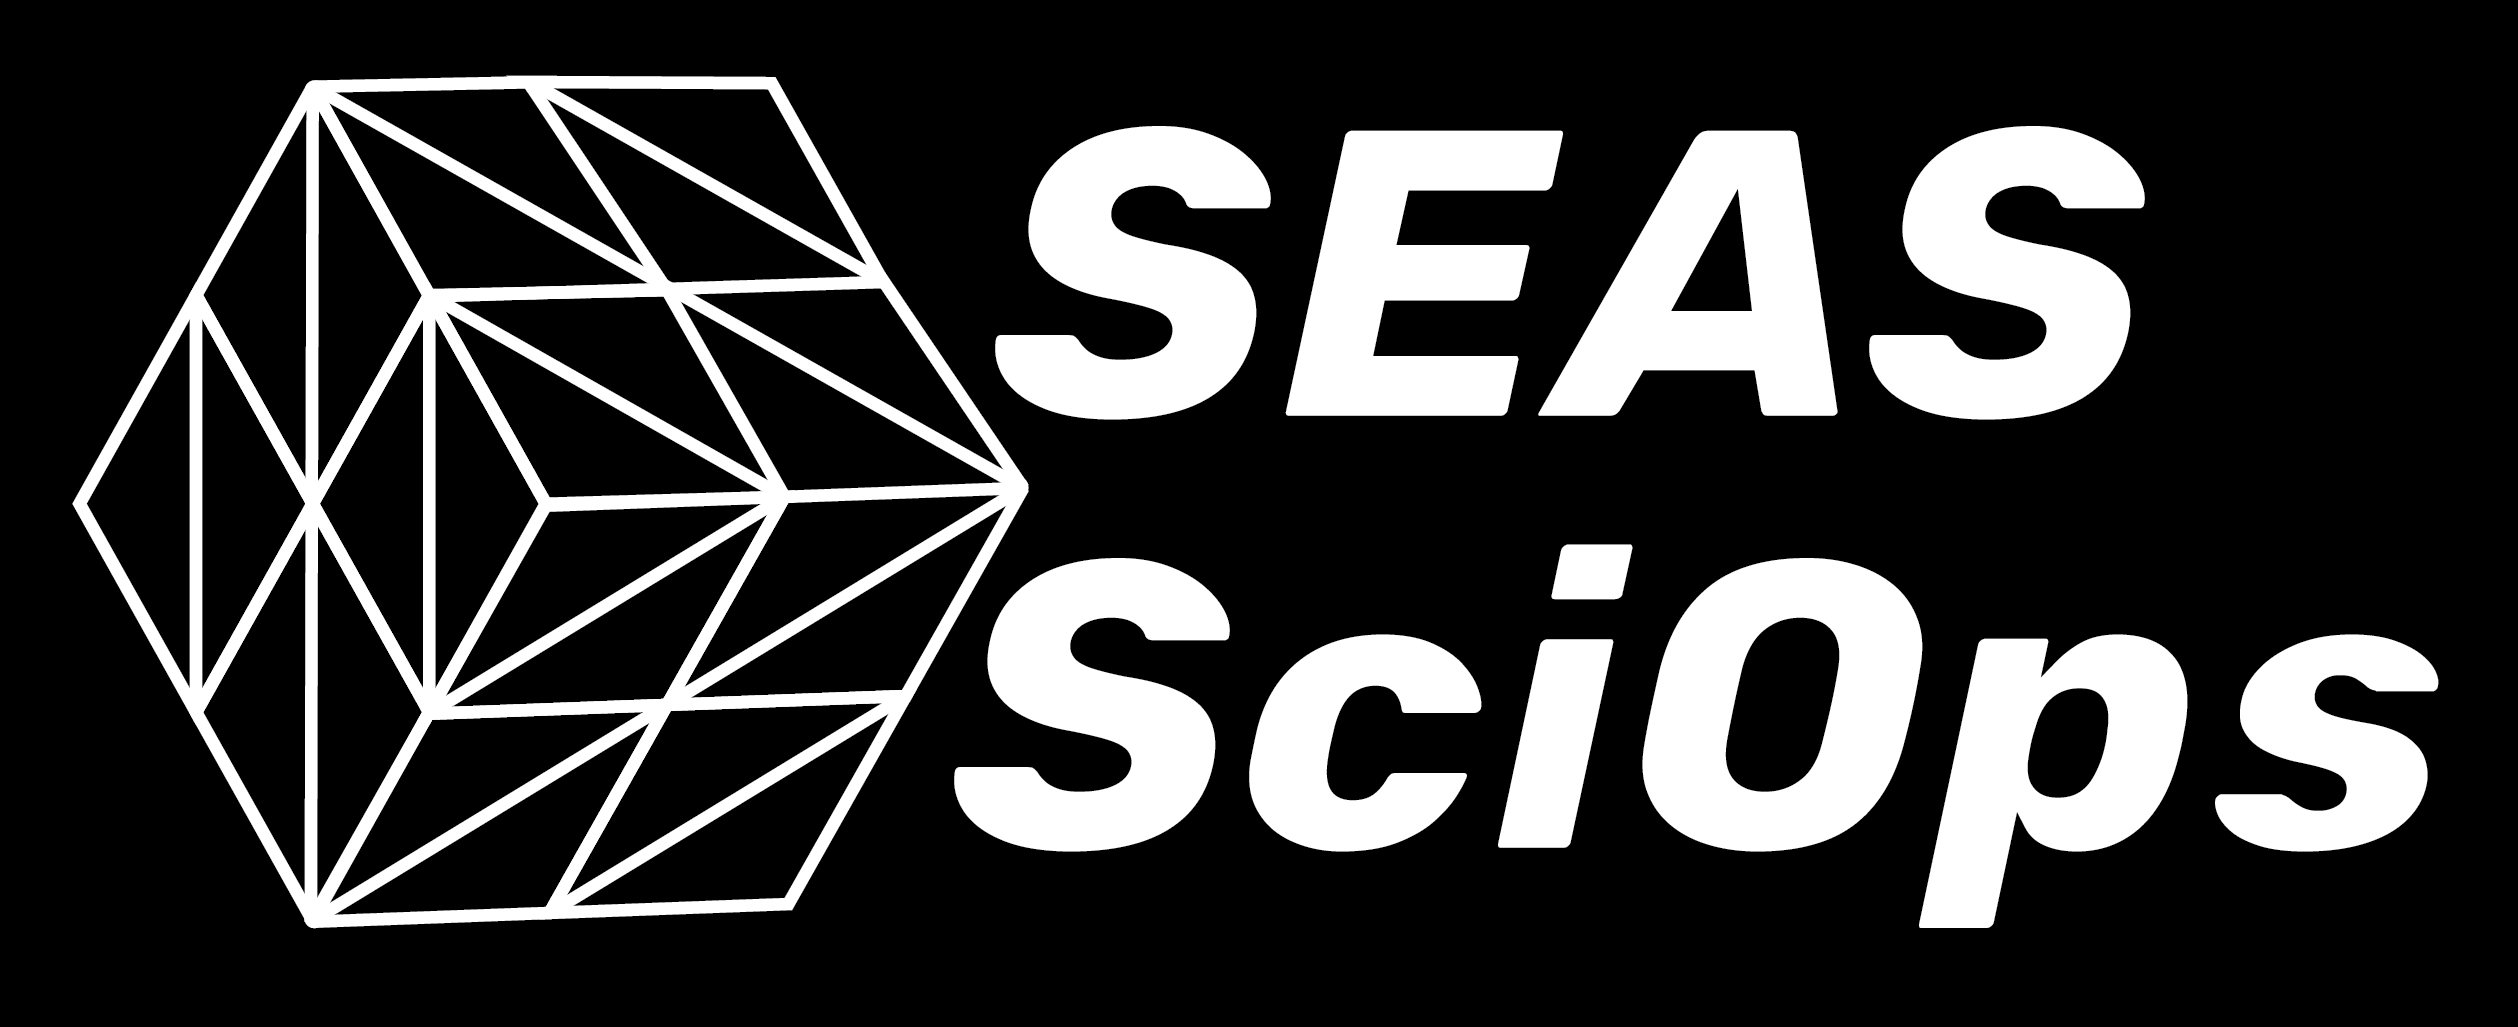 SEAS SciOps Logo